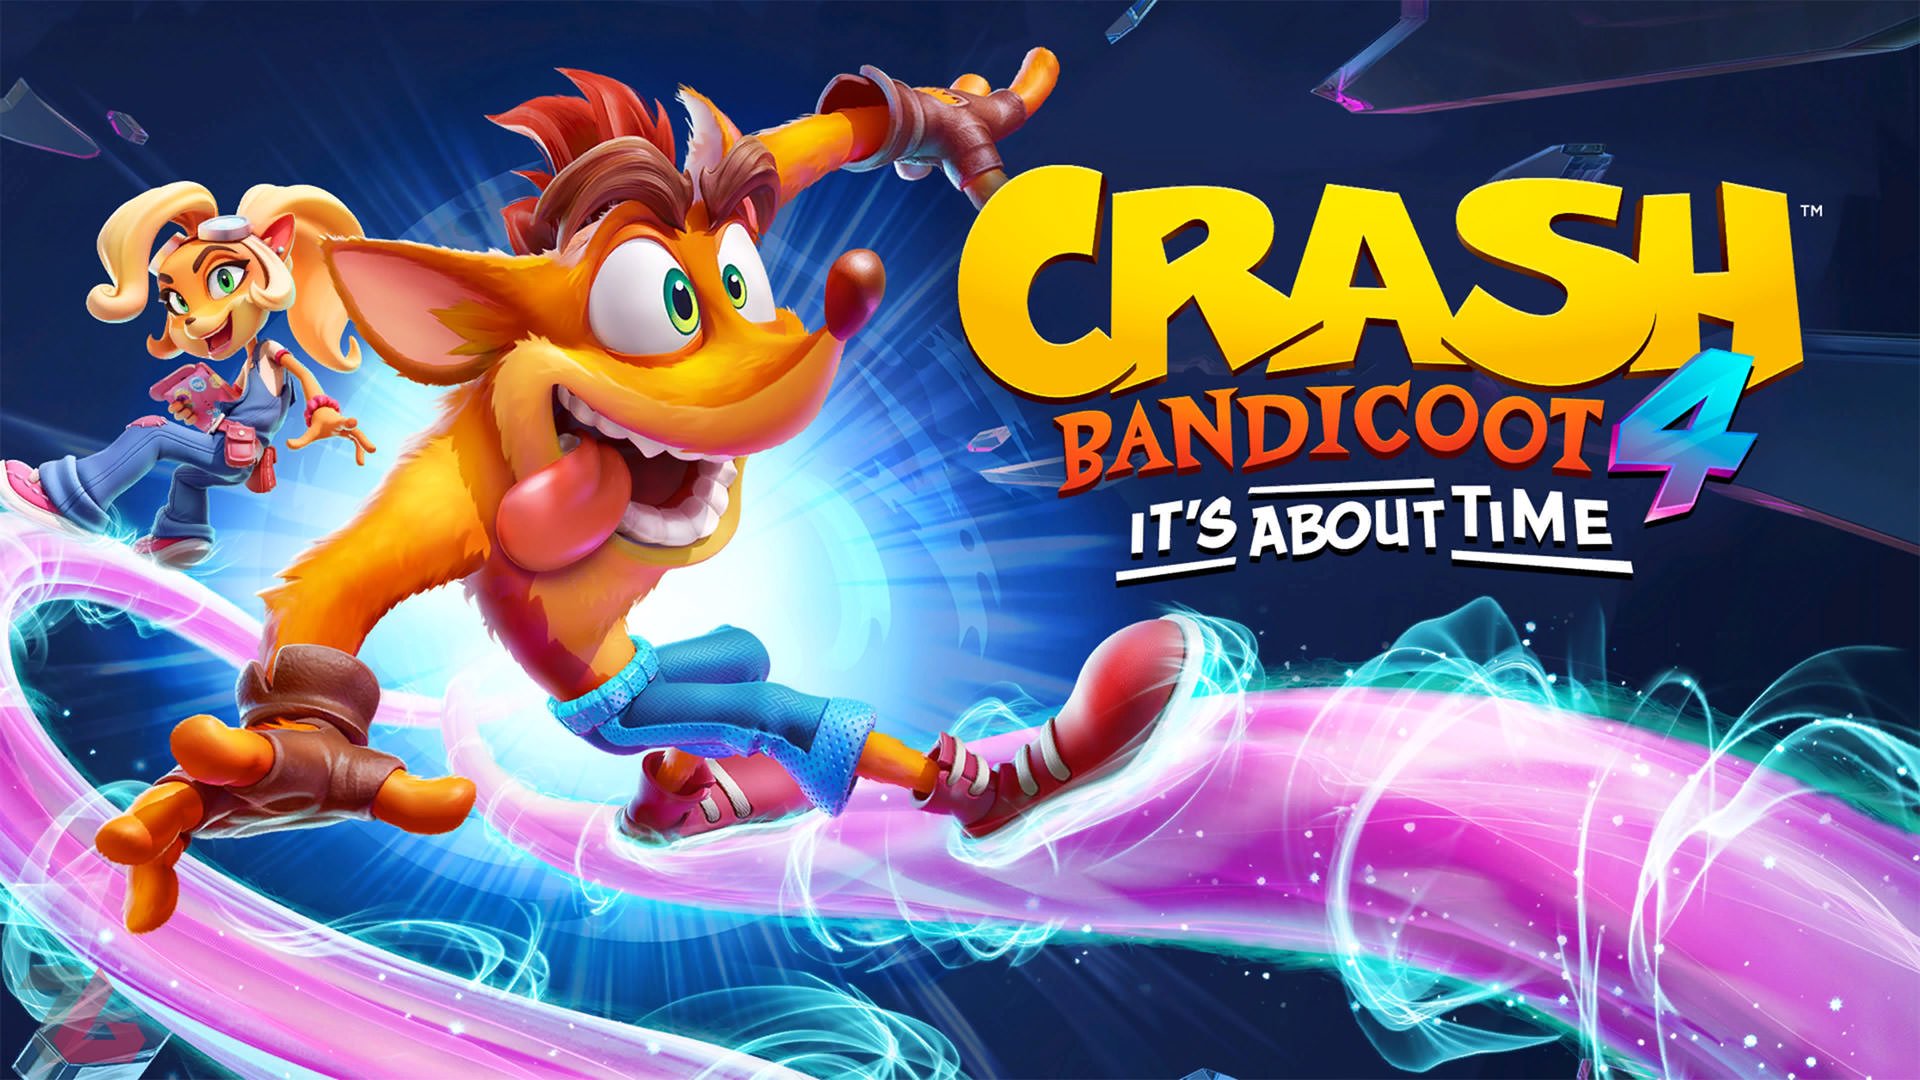 خرید بازی Crash Bandicoot 4: It's About Time - کراش باندیکوت 4 ایکس باکس xbox با قیمت مناسب همراه نقد و بررسی